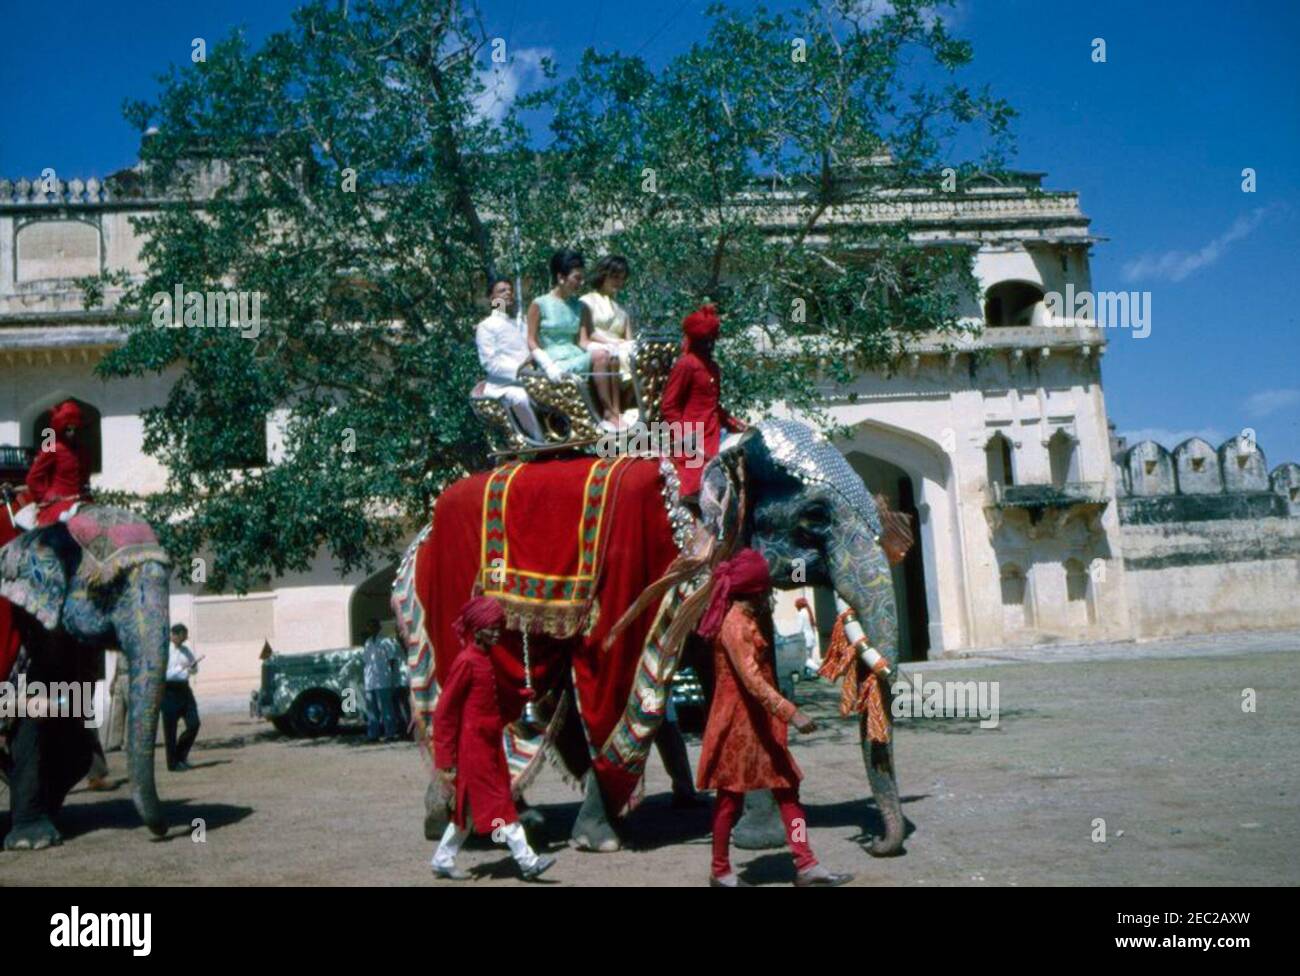 Première Dame Jacqueline Kennedyu2019s (JBK) voyage en Inde et au Pakistan: Jaipur, Rajasthan, Inde, promenade à dos d'éléphant au Palais Amber. La première dame Jacqueline Kennedy (portant une robe jaune) et sa sœur la princesse Lee Radziwill de Pologne, montez à bord d'un éléphant, Bibia, dans la cour du Palais Amber, Jaipur, Rajasthan, Inde. Le ministre de l'intérieur du Rajasthan, Mathura Das Mathur, est assis derrière la princesse Radziwill. Banque D'Images